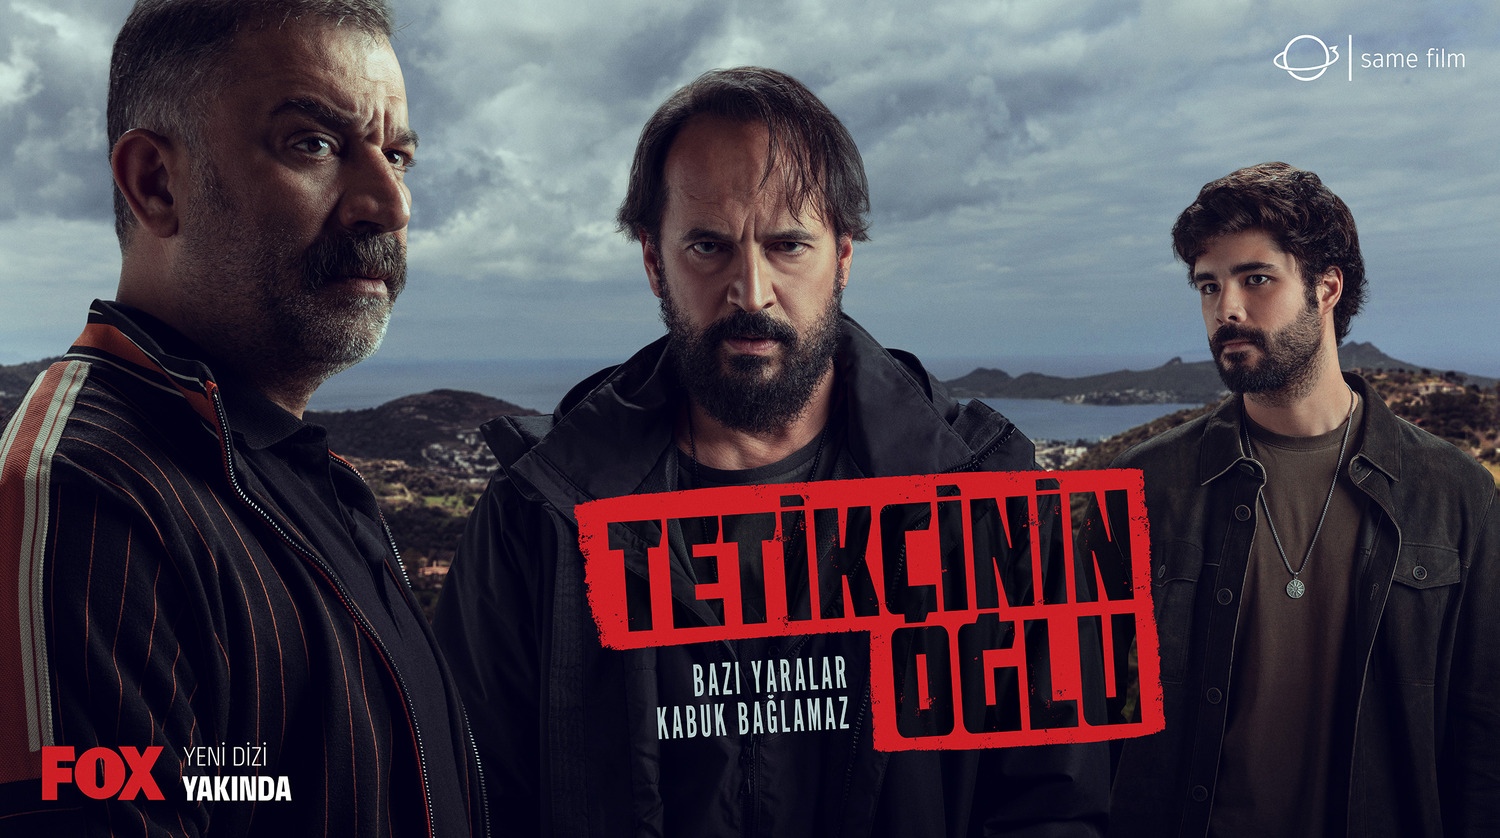 Extra Large TV Poster Image for Tetikçinin Oglu (#2 of 2)